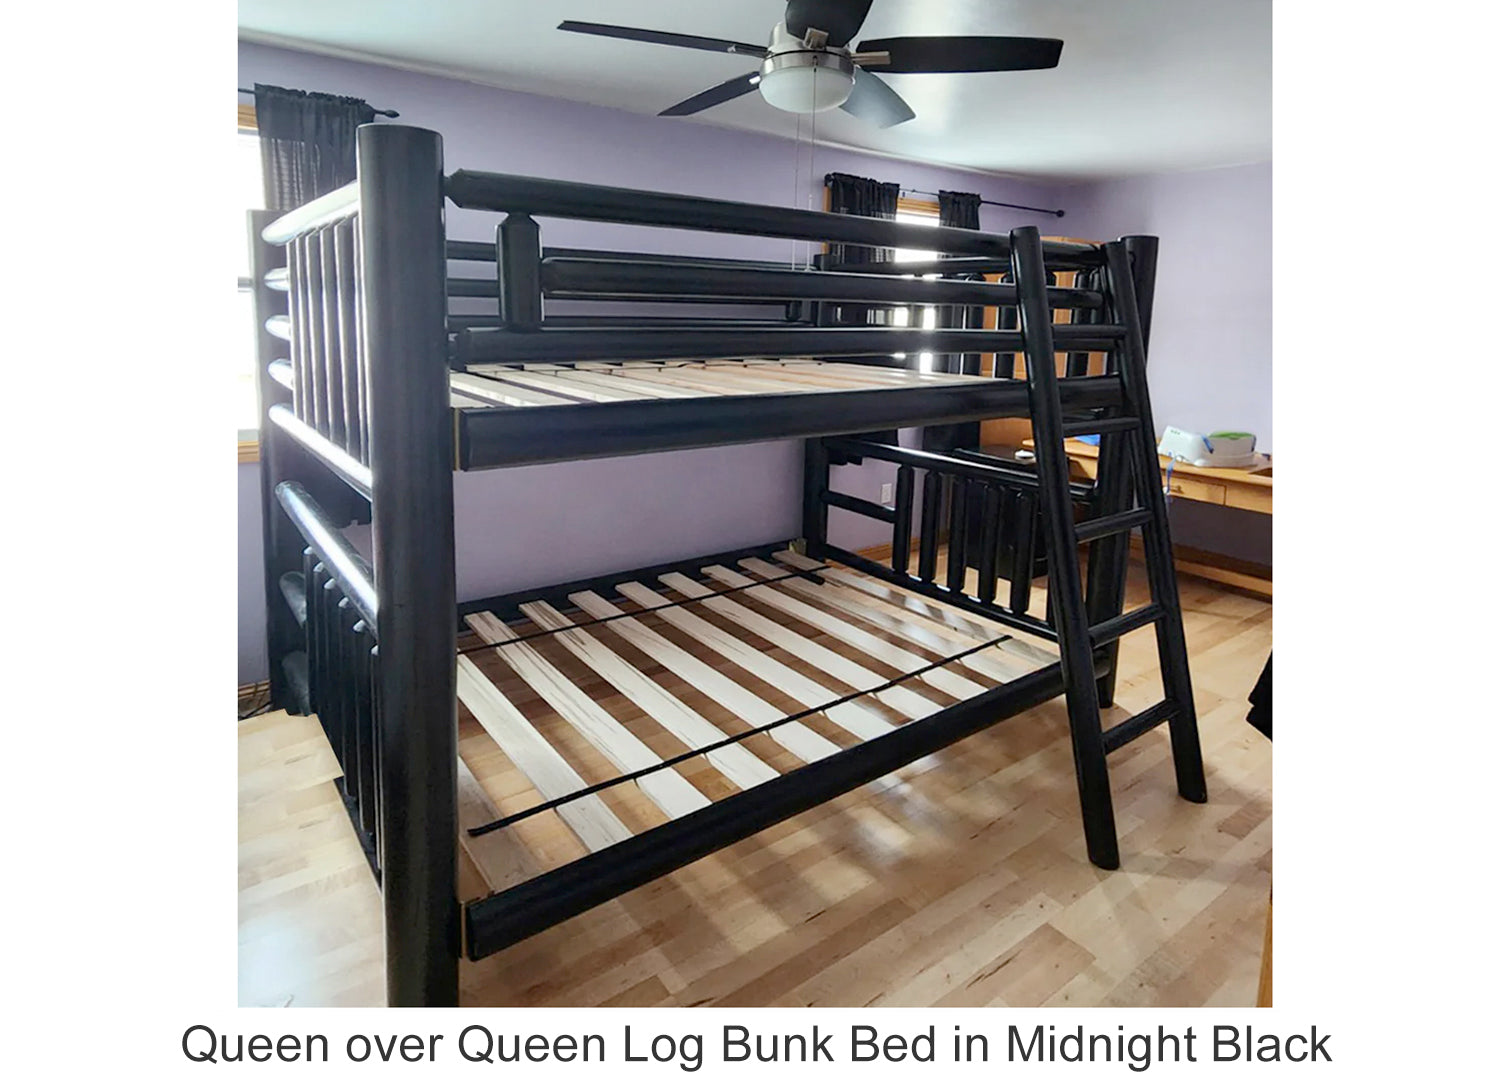 Queen over Queen Log Bunk Bed in Midnight Black